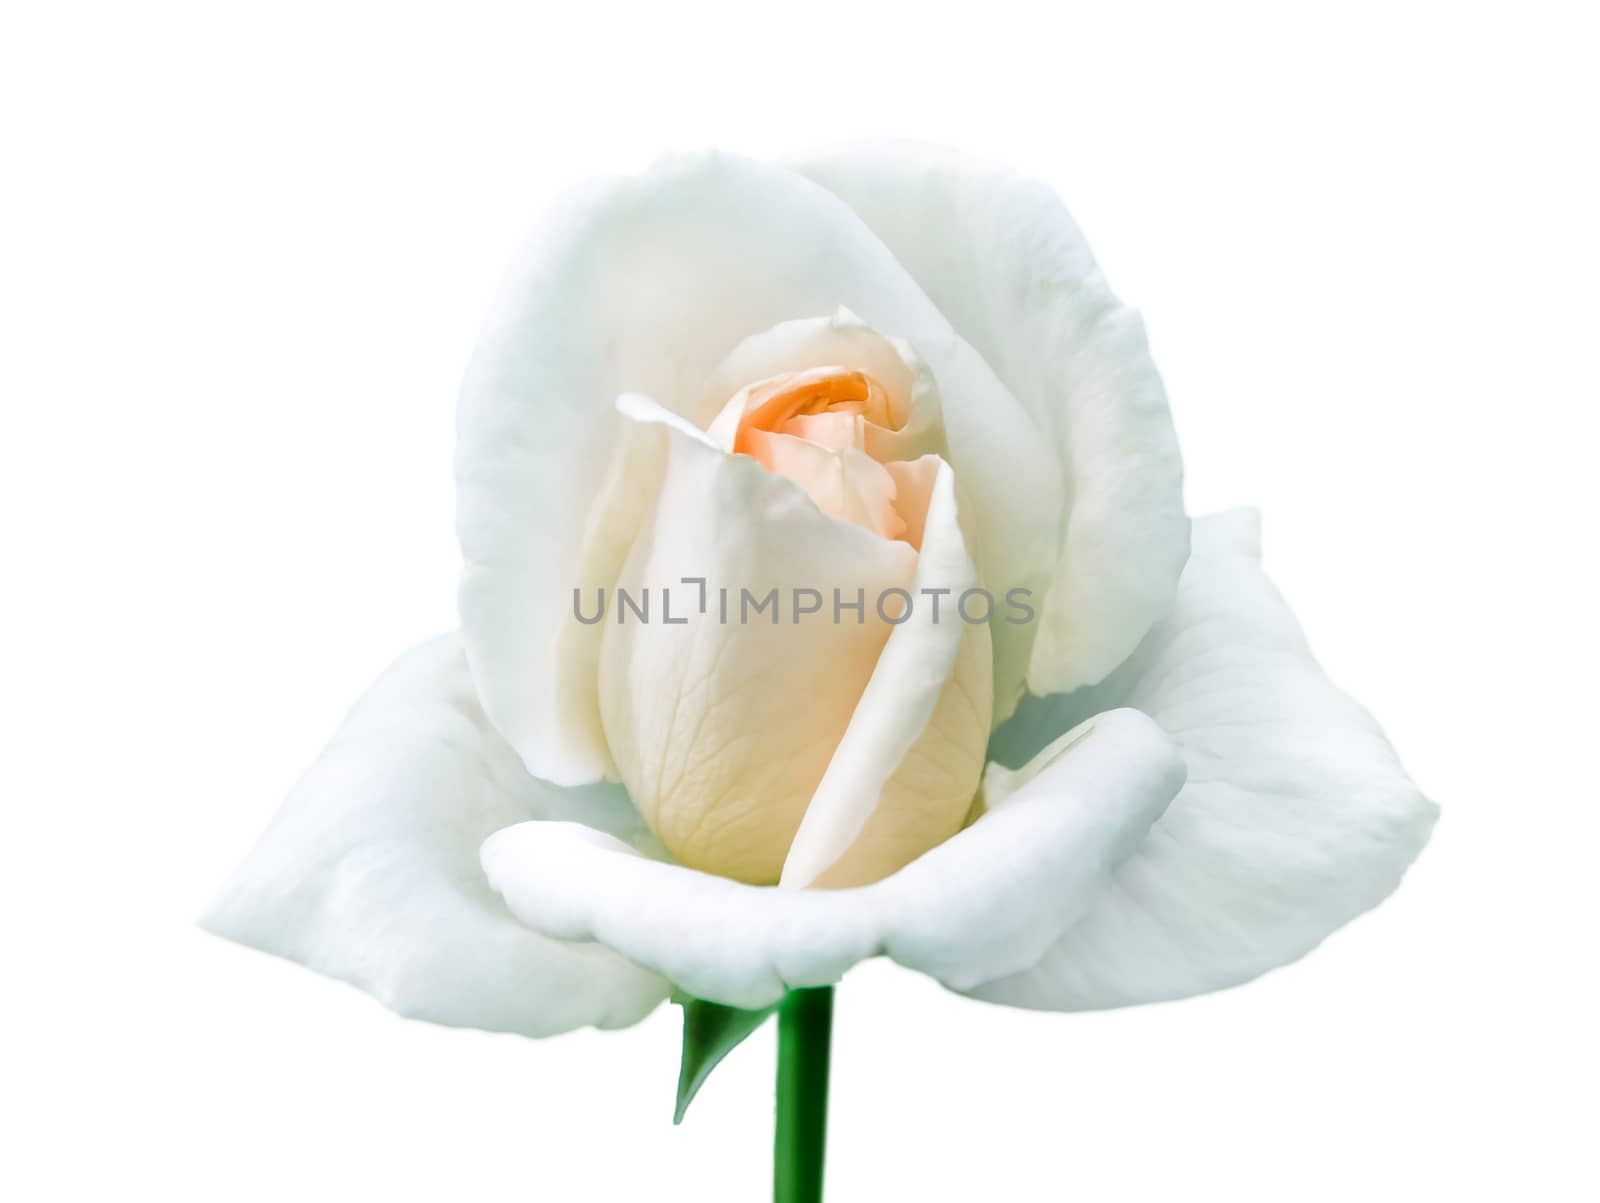 Single white rose on isolated white background.